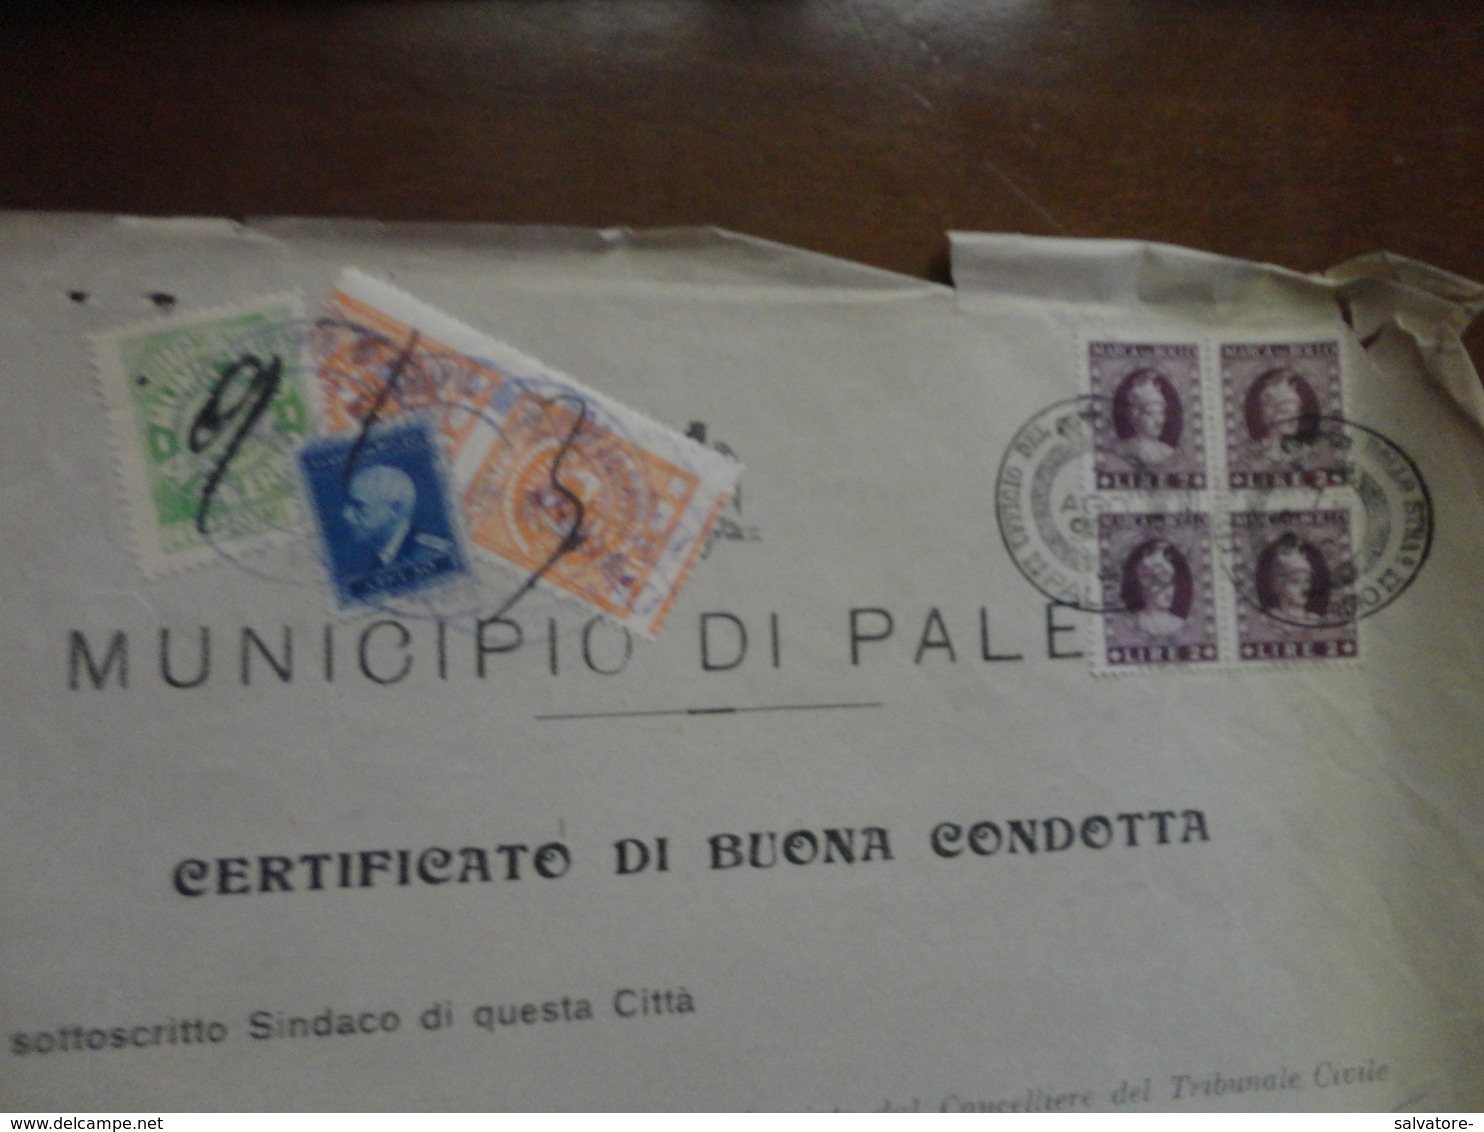 MARCHE DA BOLLO COPPIA LIRE 2 COMUNE PALERMO+QUARTINA VALORI GEMELLI LIRE 2+ALTRE 2-1946 - Steuermarken